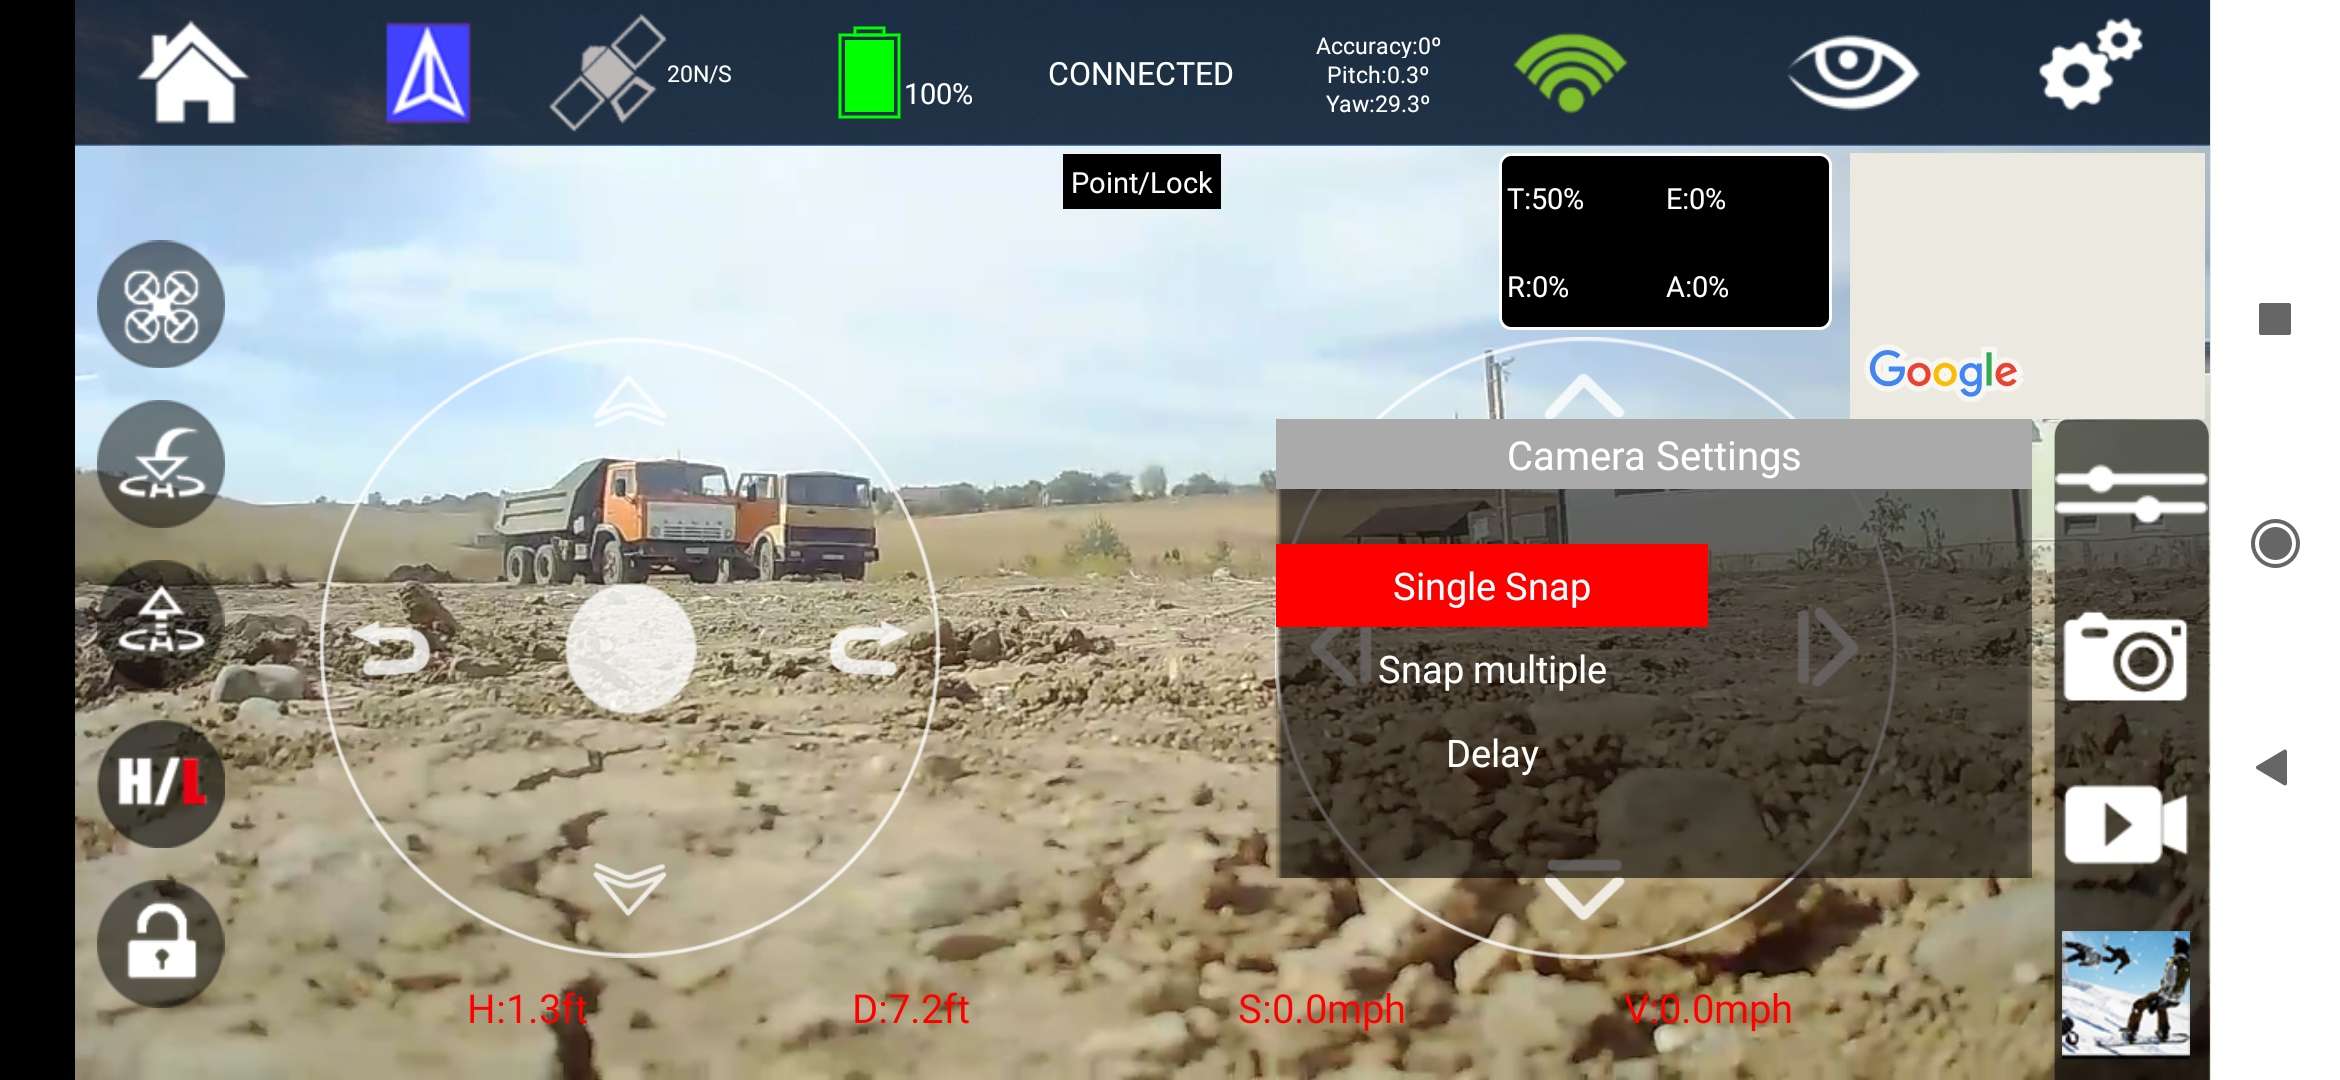 Другие - Китай: Wltoys XK X1 GPS – недорогой RTF дрон с FPV и Wi-Fi